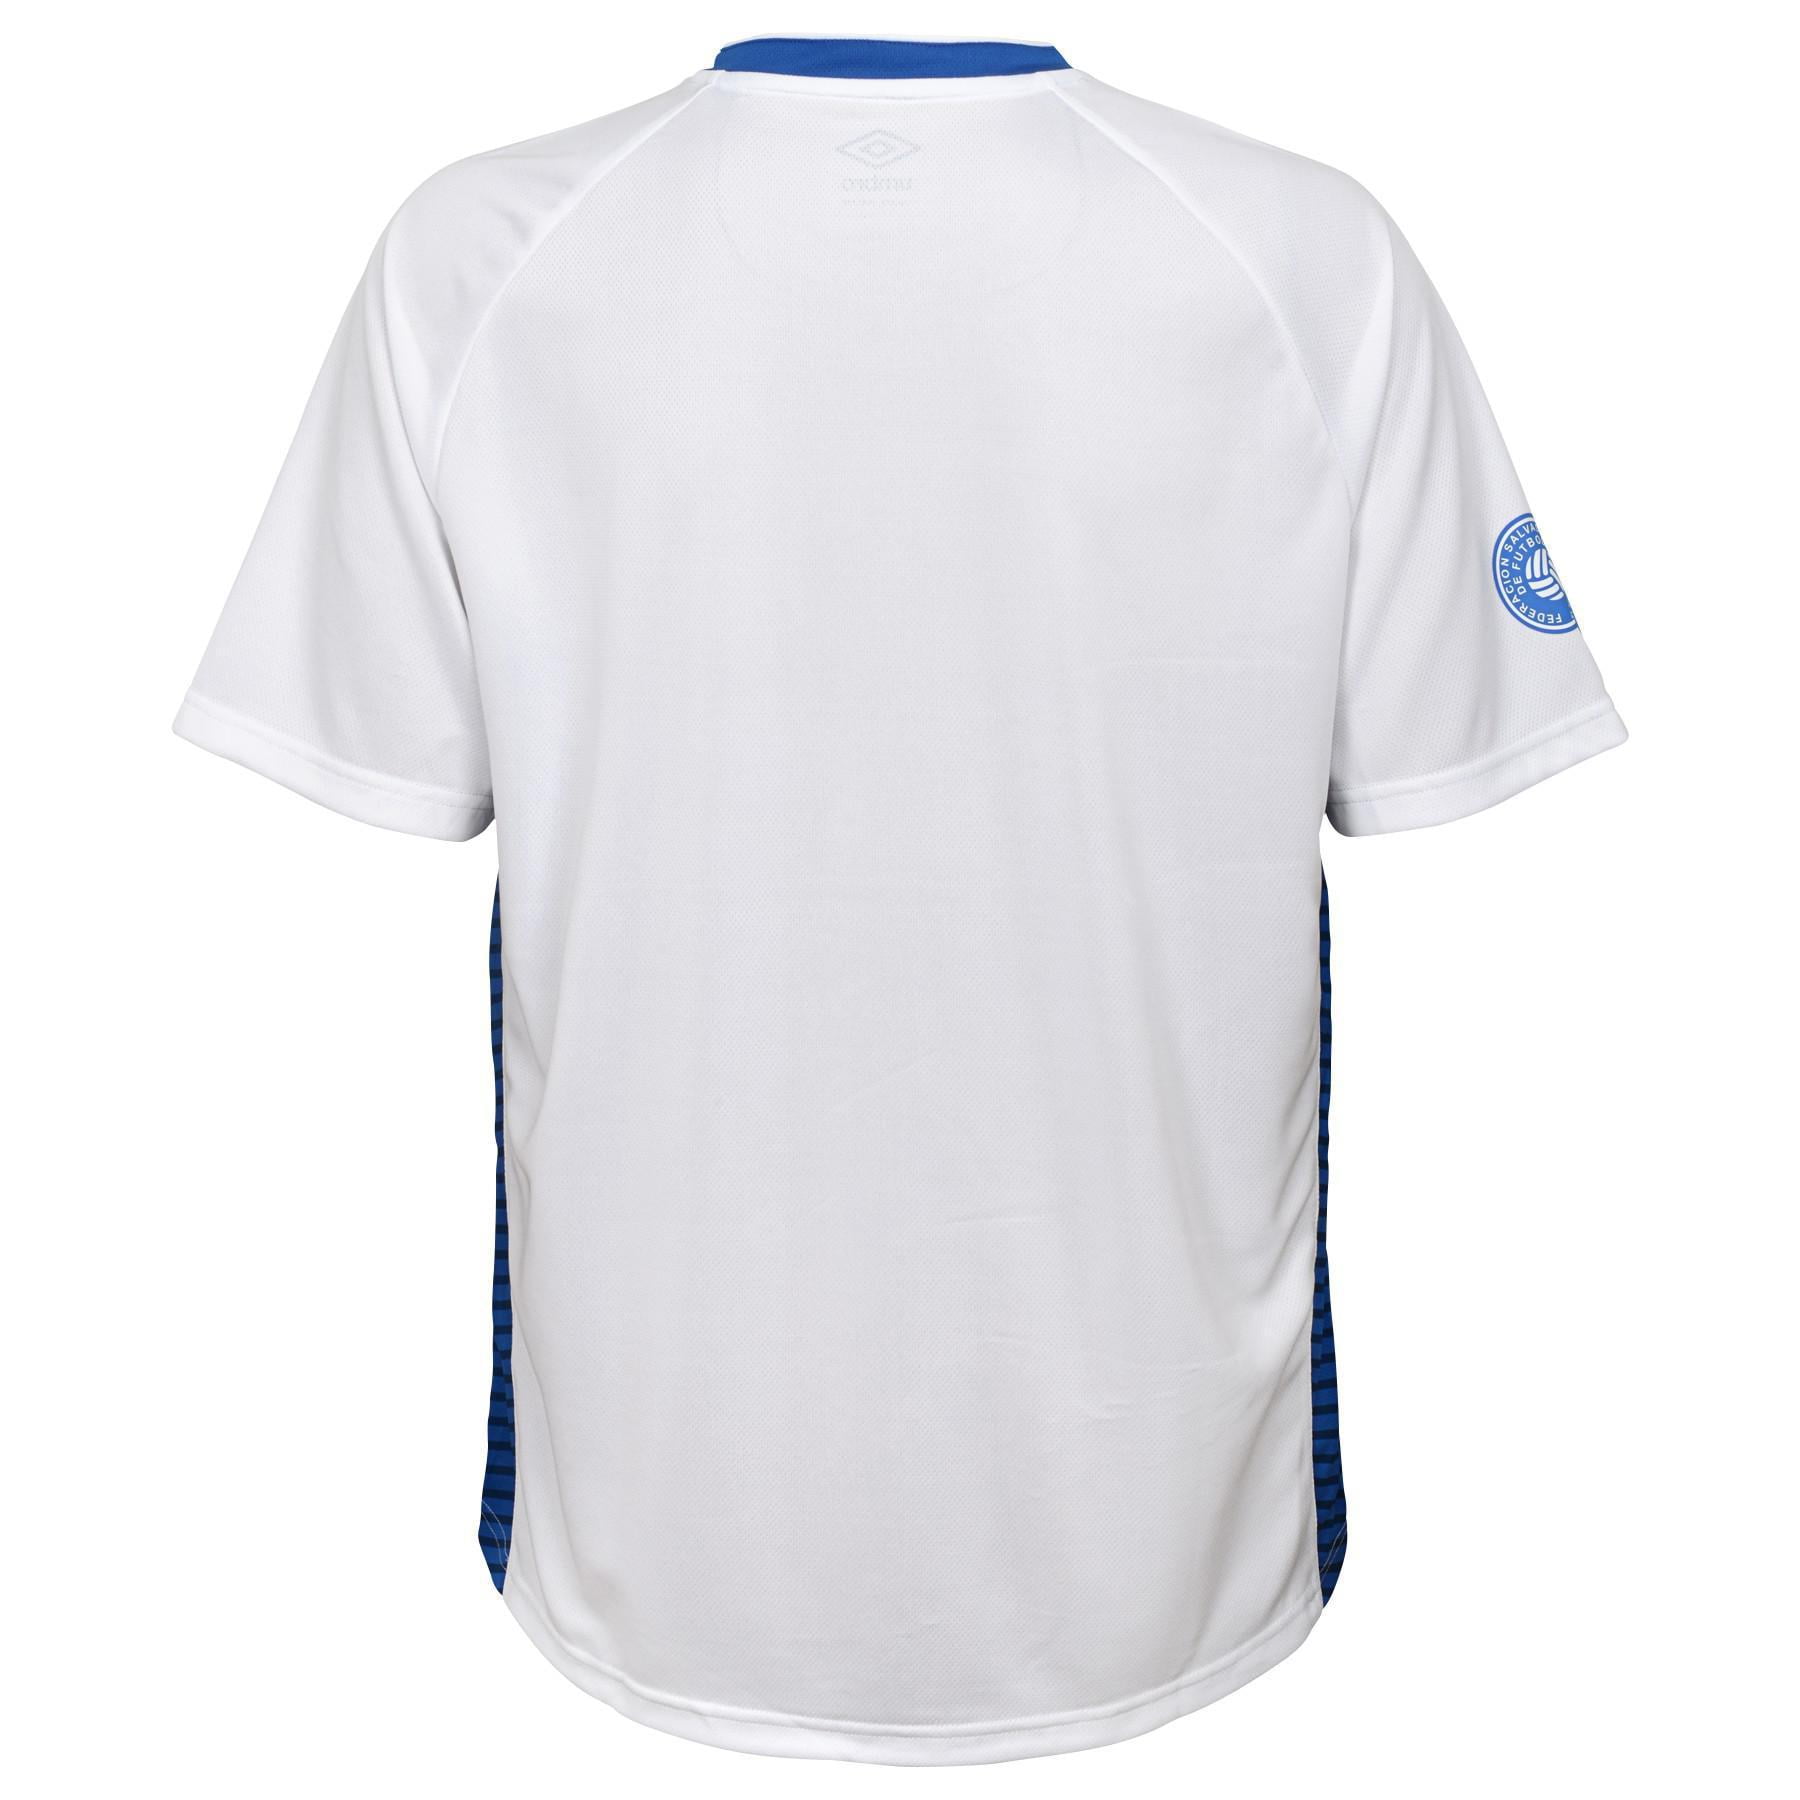 Umbro Men's El Salvador Soccer Training Jersey Shirt, Color Options ...